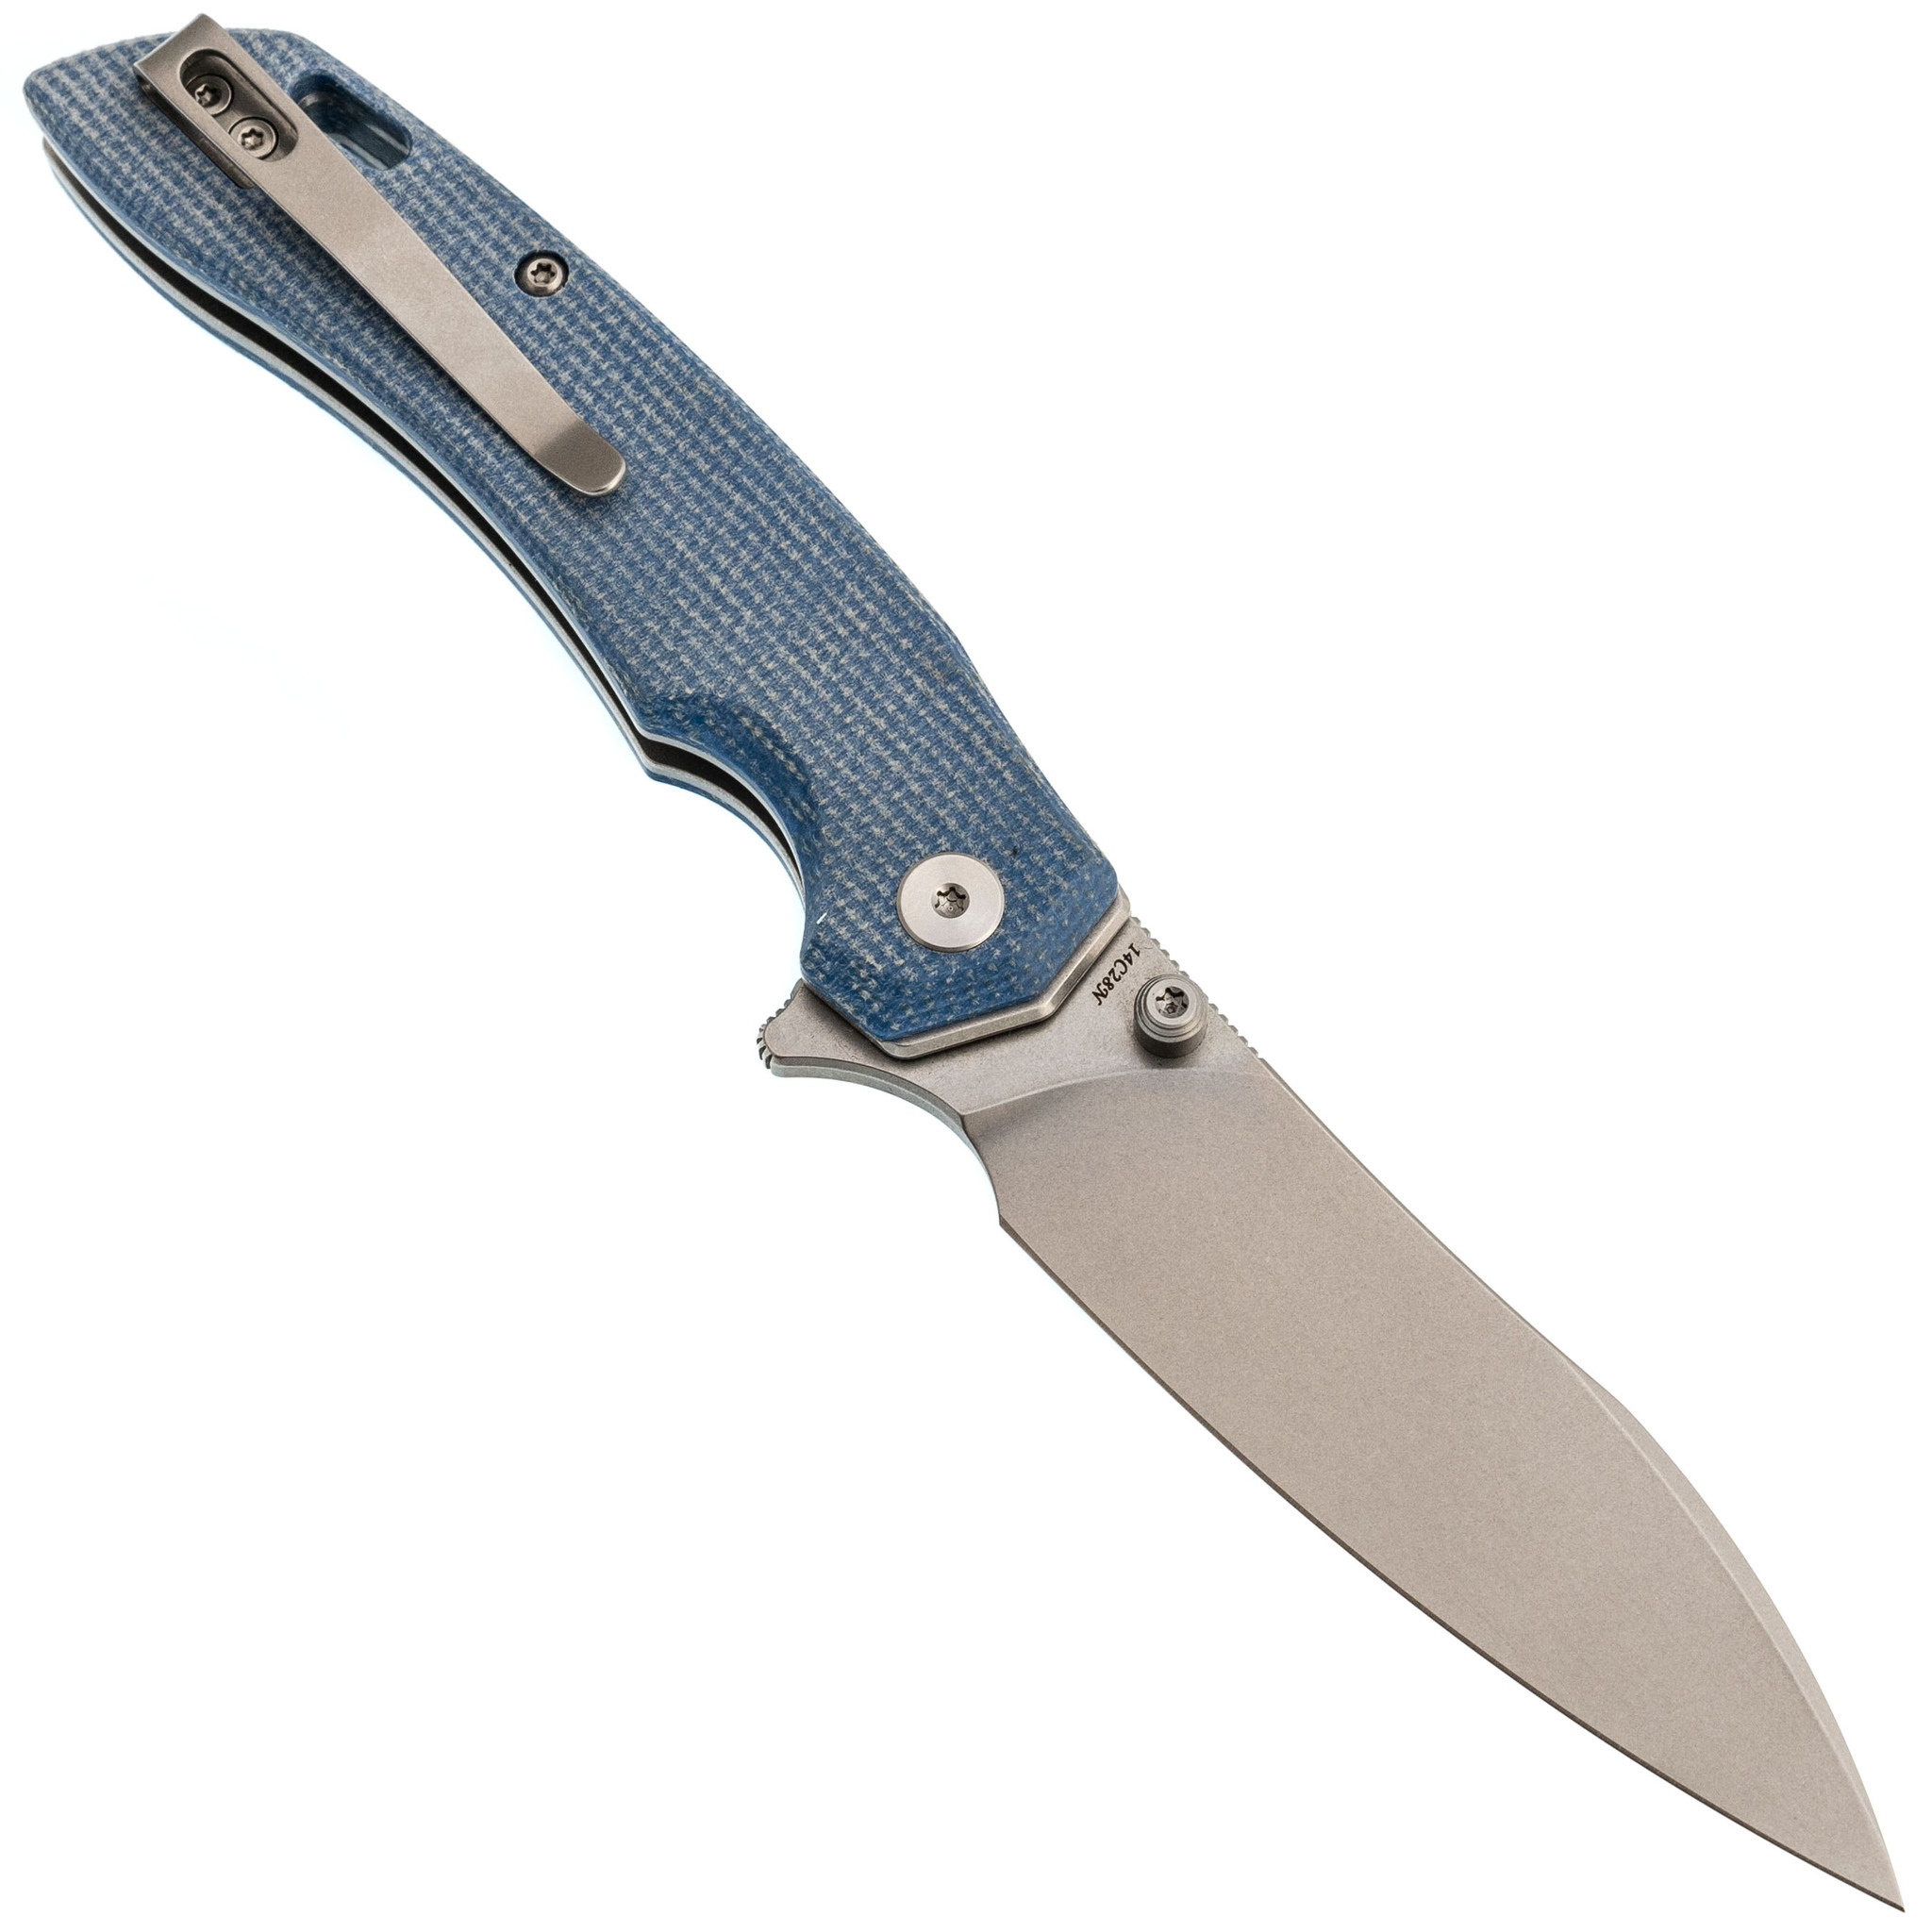 Складной нож Trivisa Aur-04L, сталь 14C28N, рукоять микарта, синий - фото 3